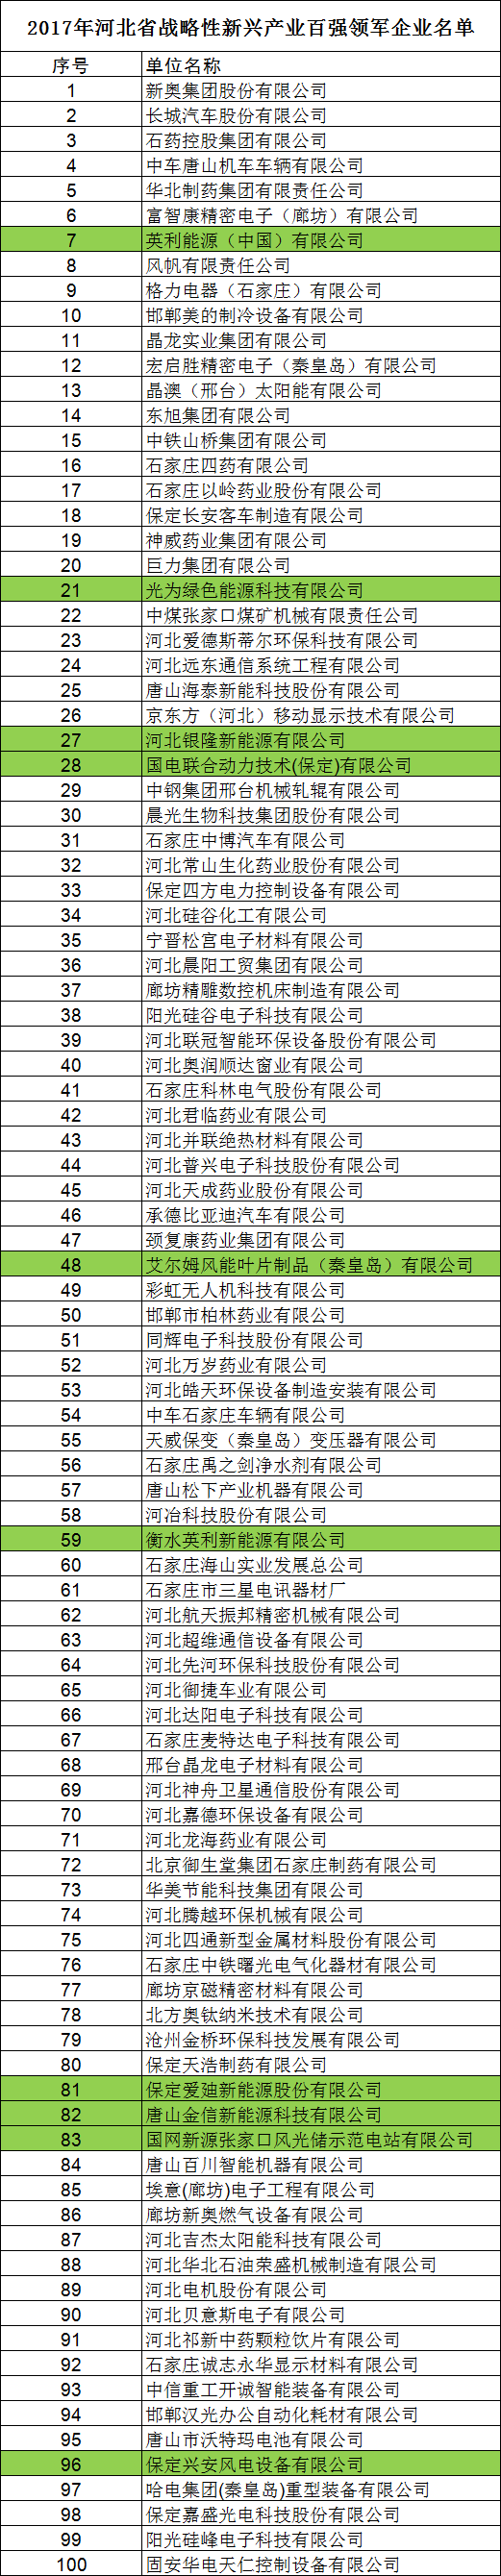 河北省发布2017战略性新兴产业“双百强”企业名单 多家风电设备与新能源企业在列